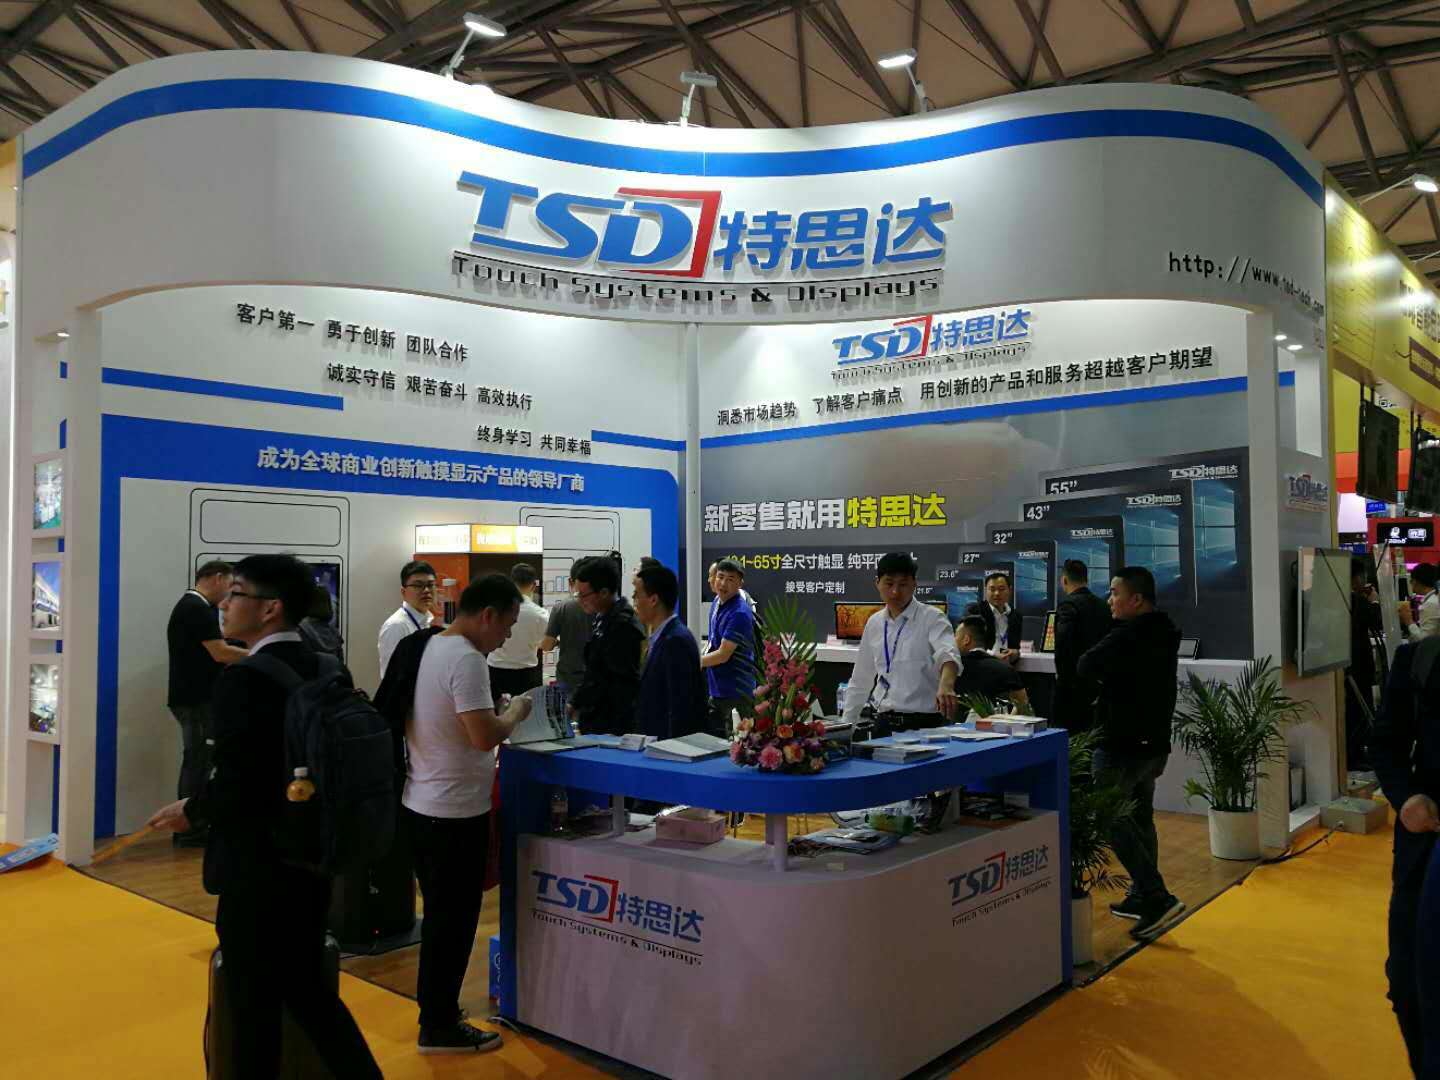 TSD attend Shanghai CVS exhibition